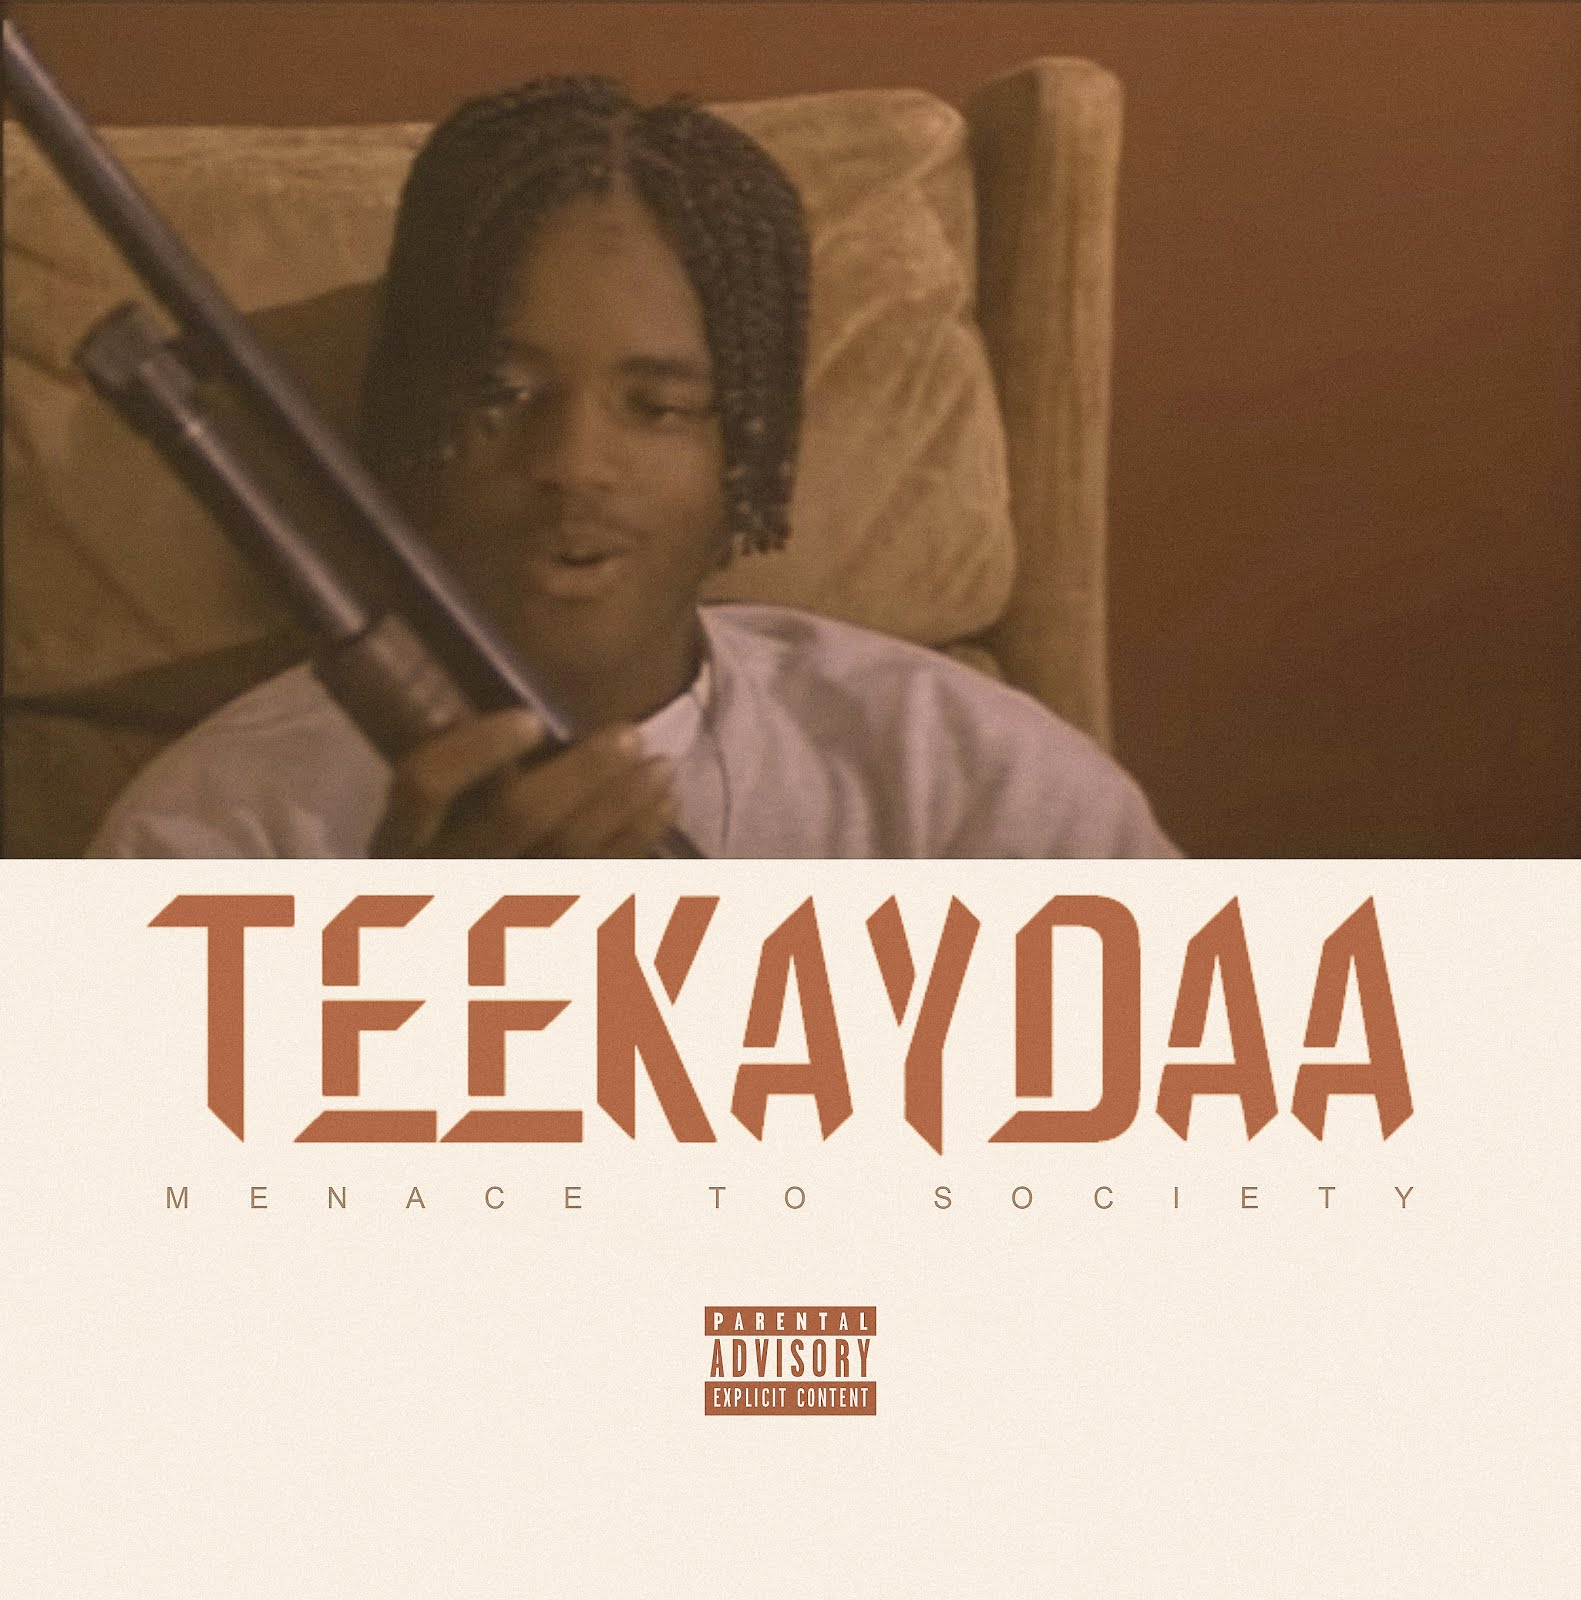 Teekaydaa - “Menace to Society” (Produced by BJM)